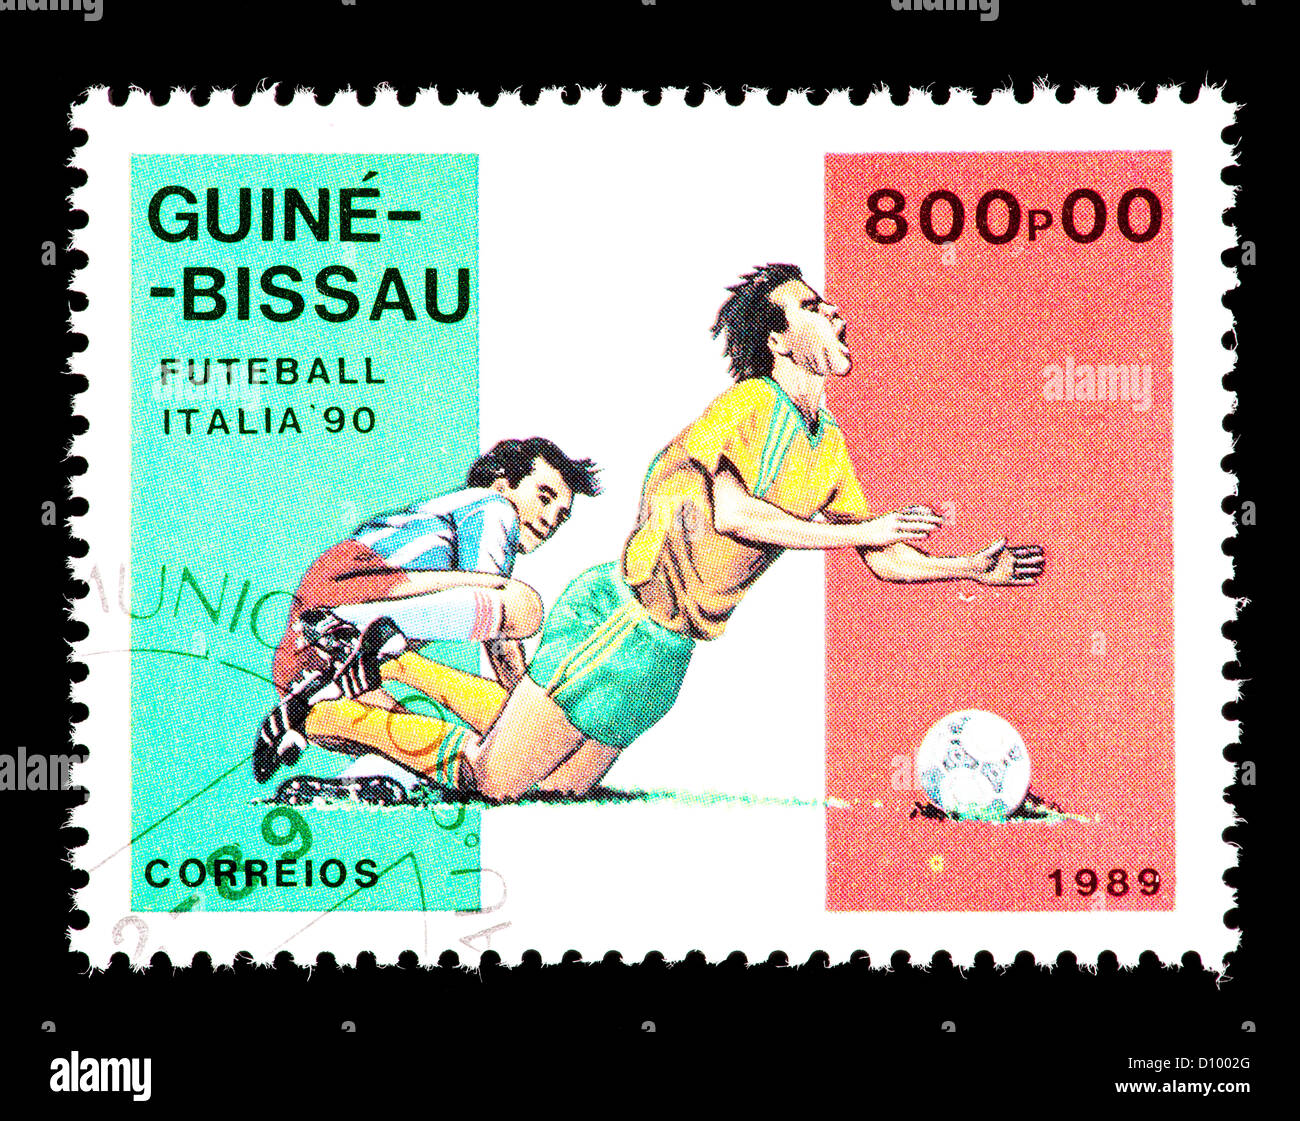 Timbre-poste de la Guinée-Bissau représentant deux joueurs de football, émis pour la Coupe du Monde 1990 en Italie. Banque D'Images